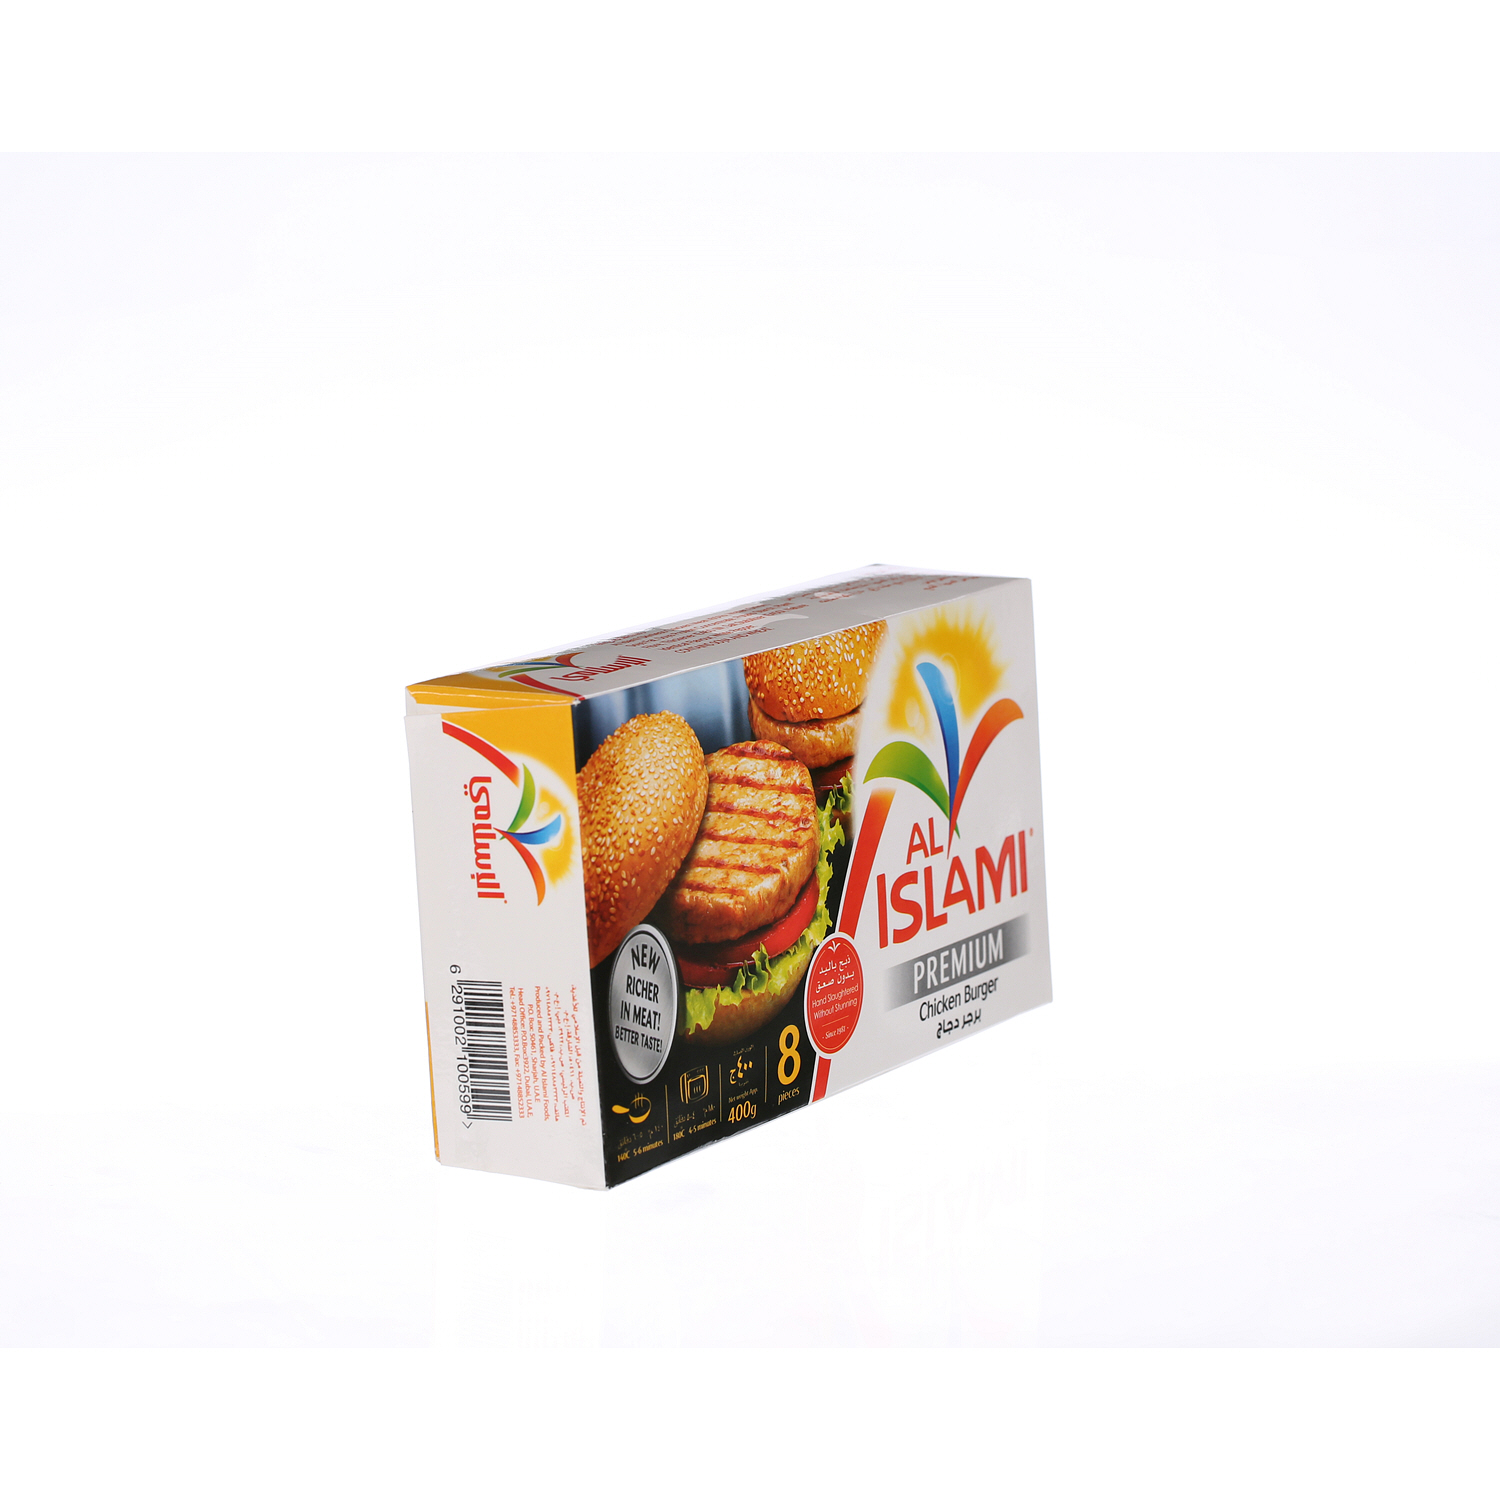 Al Islami Chicken Burger 400 g × 8 Pack